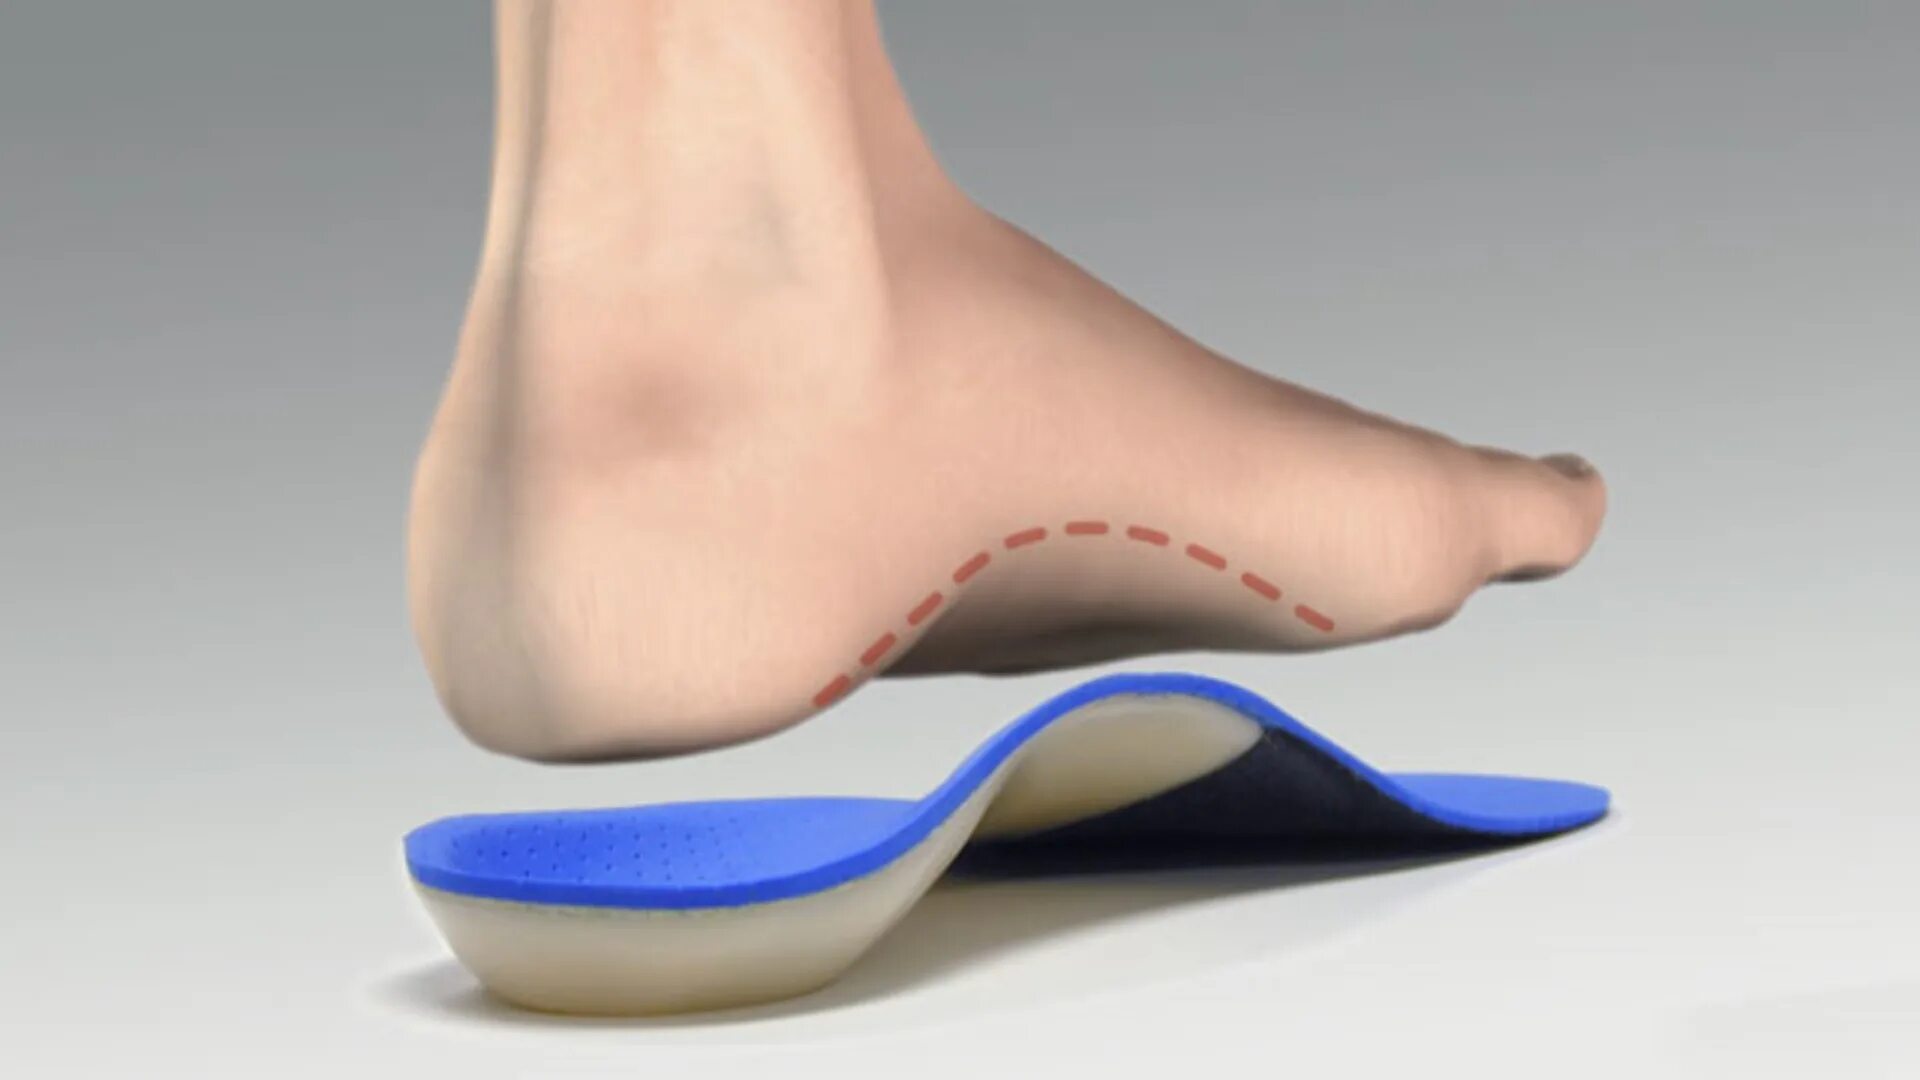 Spread feet. Стелька ортопедическая Орто доктор d010. Ортопедические стельки при вальгусной деформации. Стельки ортопедические lum101n.